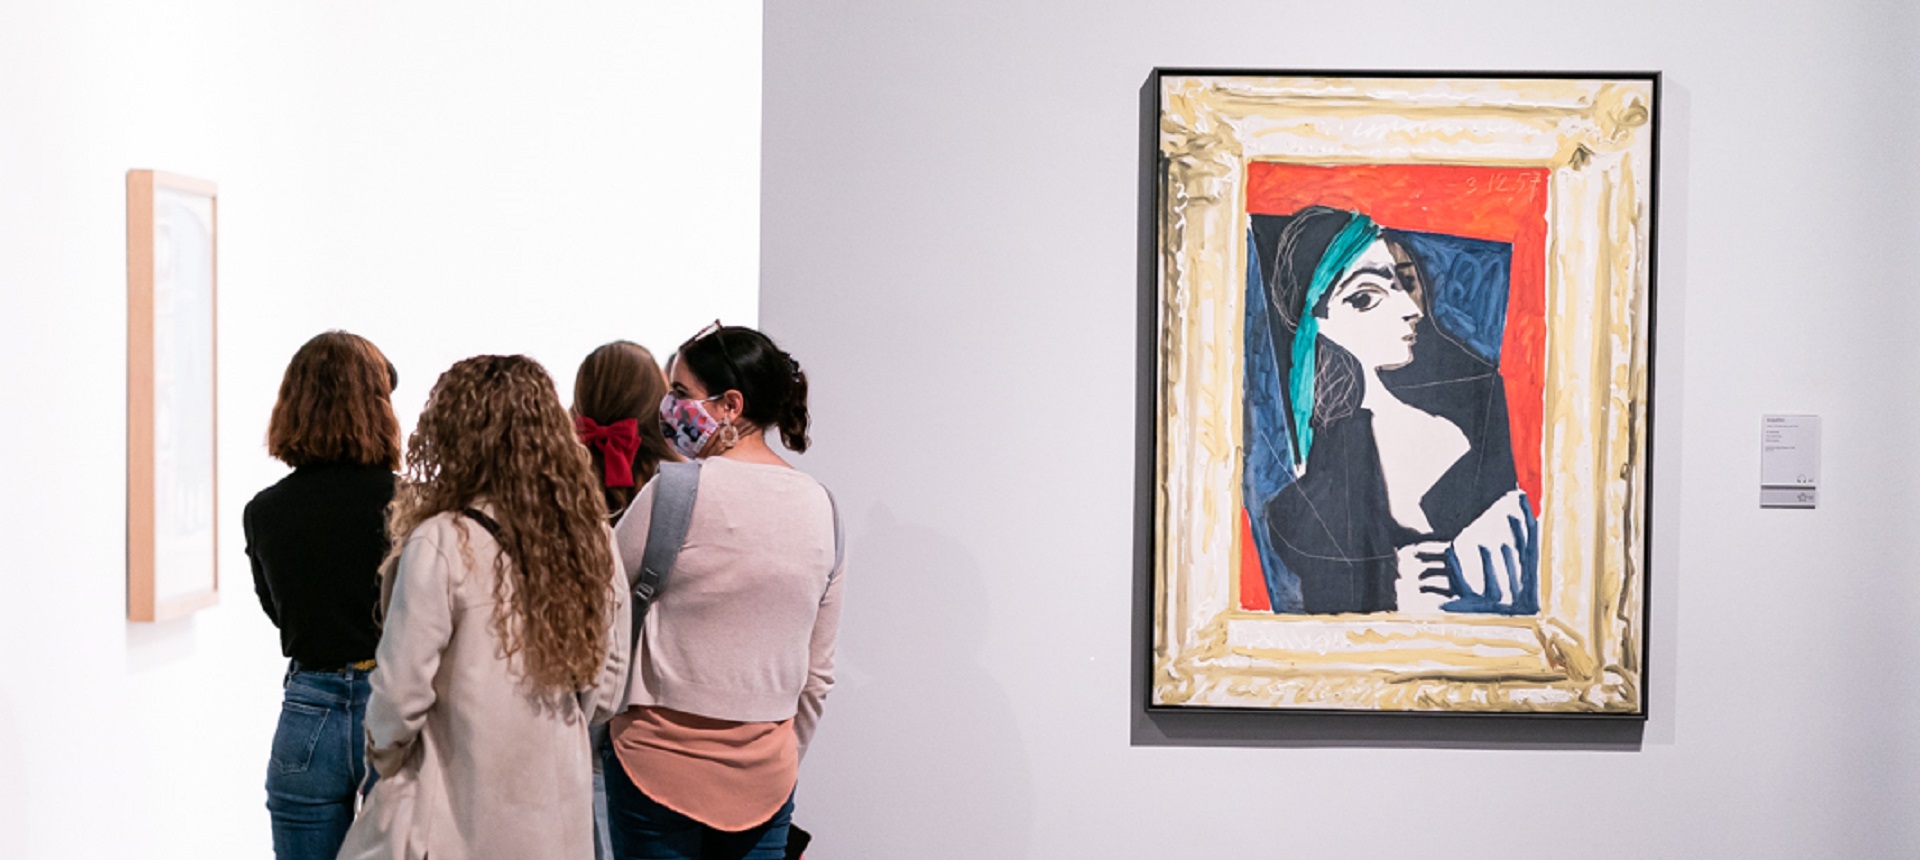 Colección permanente del Museu Picasso, Barcelona. Sala 15